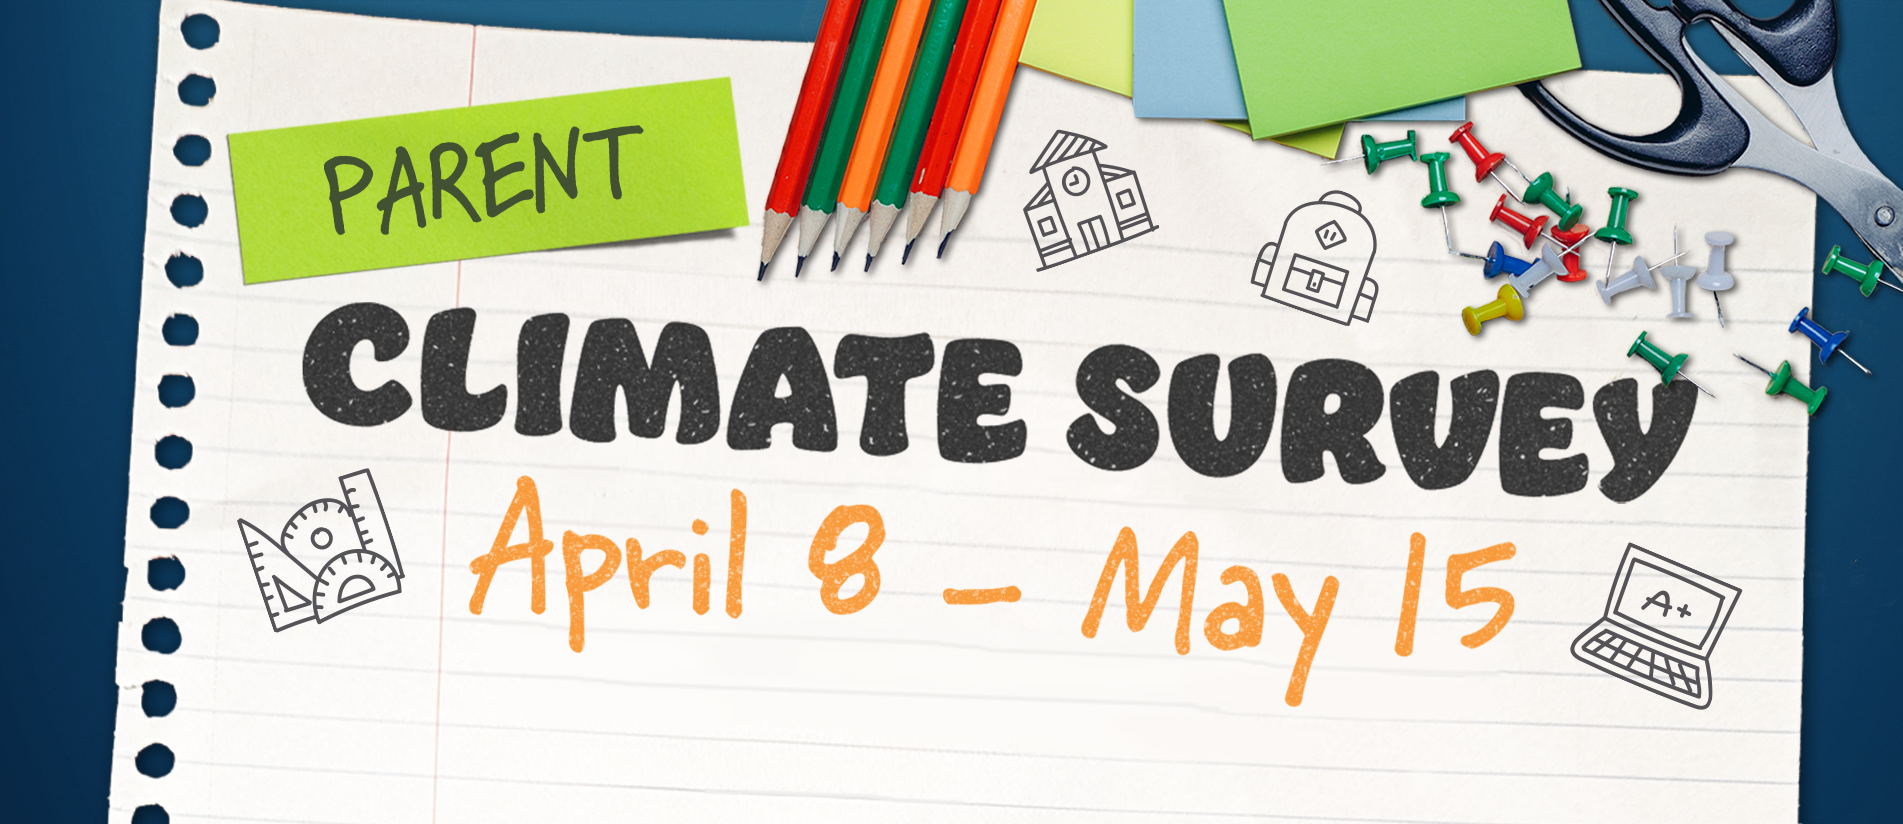 Parent Climate Survey April 8 - May 15